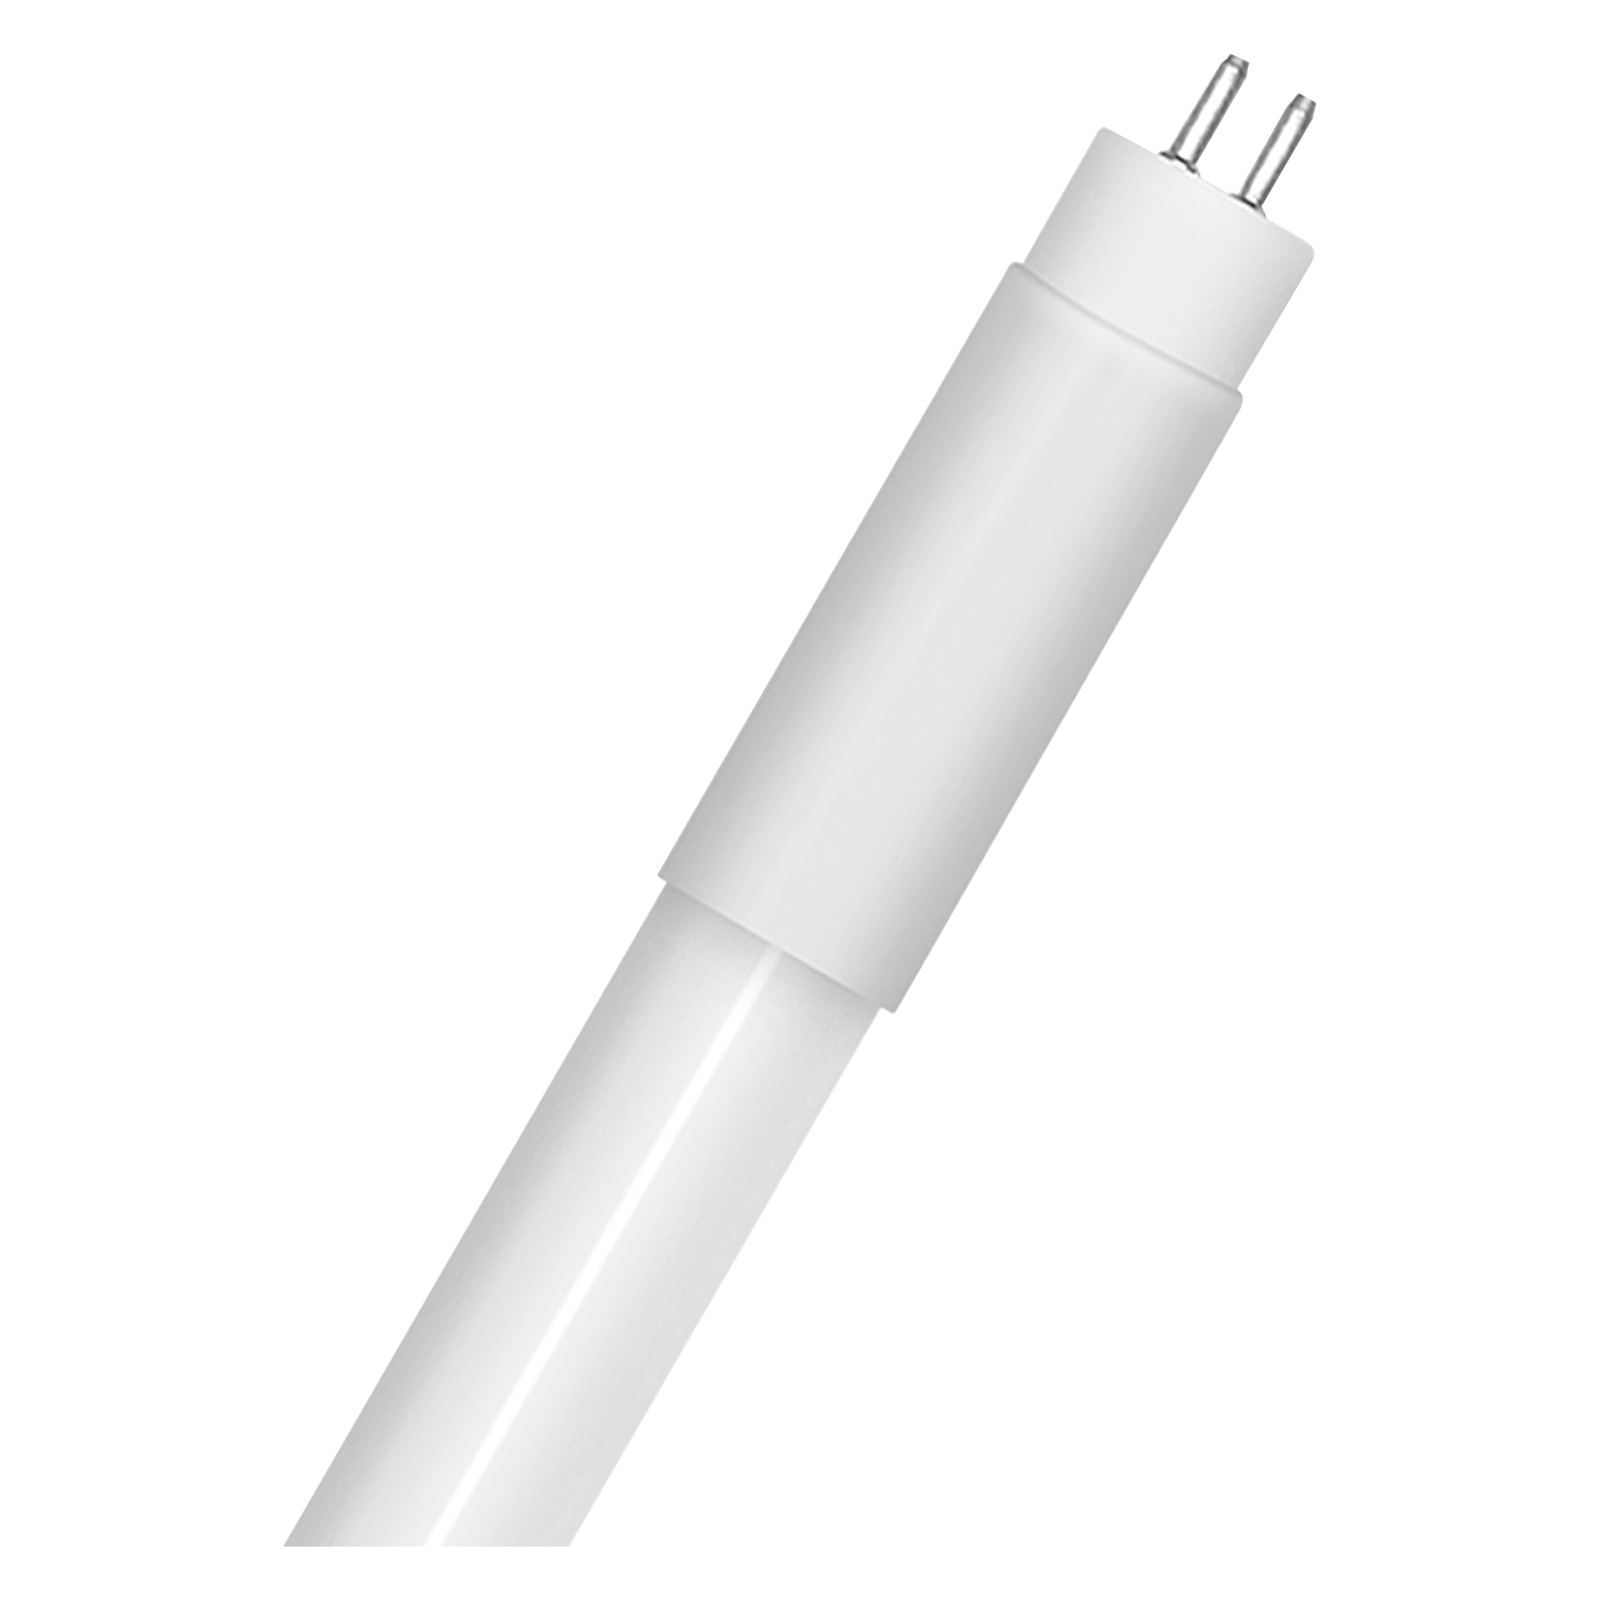 OSRAM LED tube bulb T5 HF HE35 P 1449 mm 18W 830